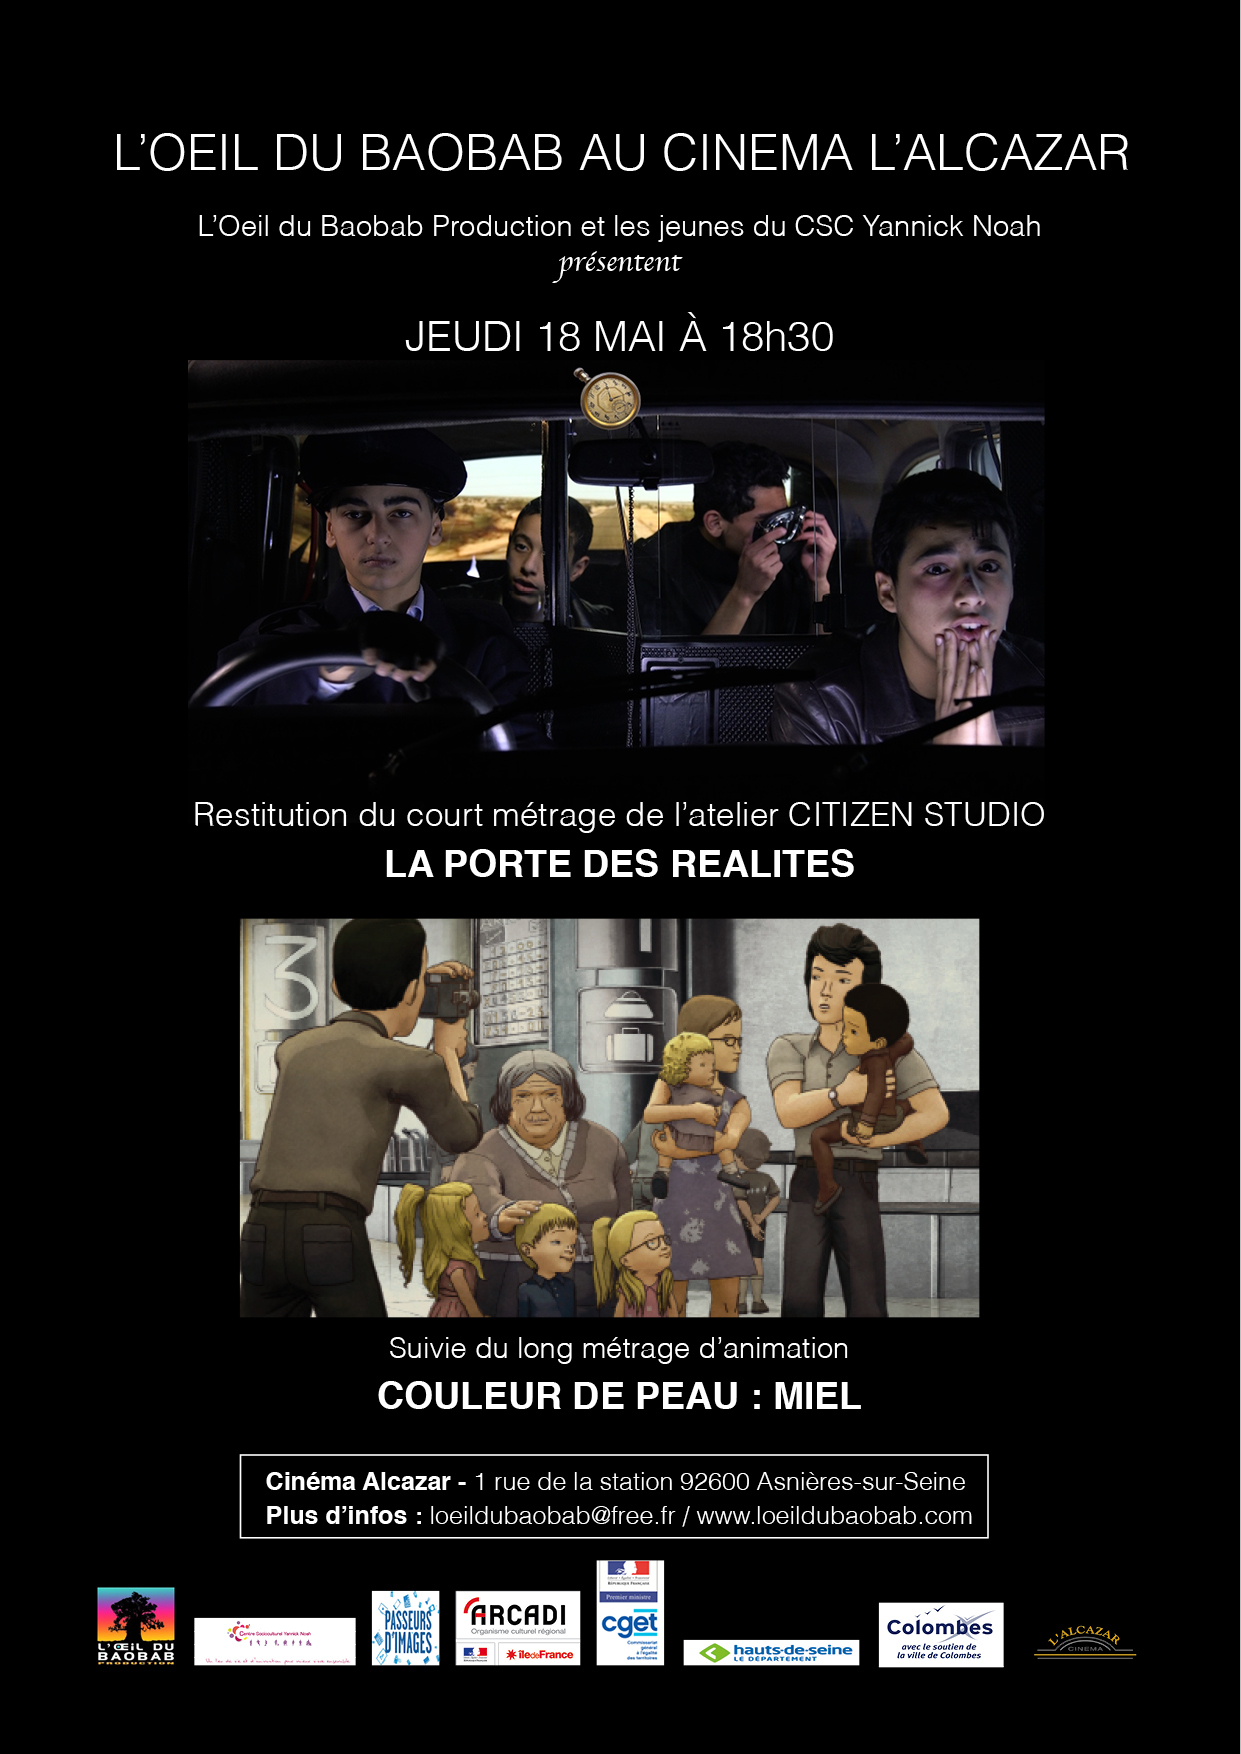 Jeudi 18 mai à 18h30 - Affiche de la séance de restitution de l'atelier Citizen Studio au cinéma L'Alcazar (Asnières-sur-Seine)